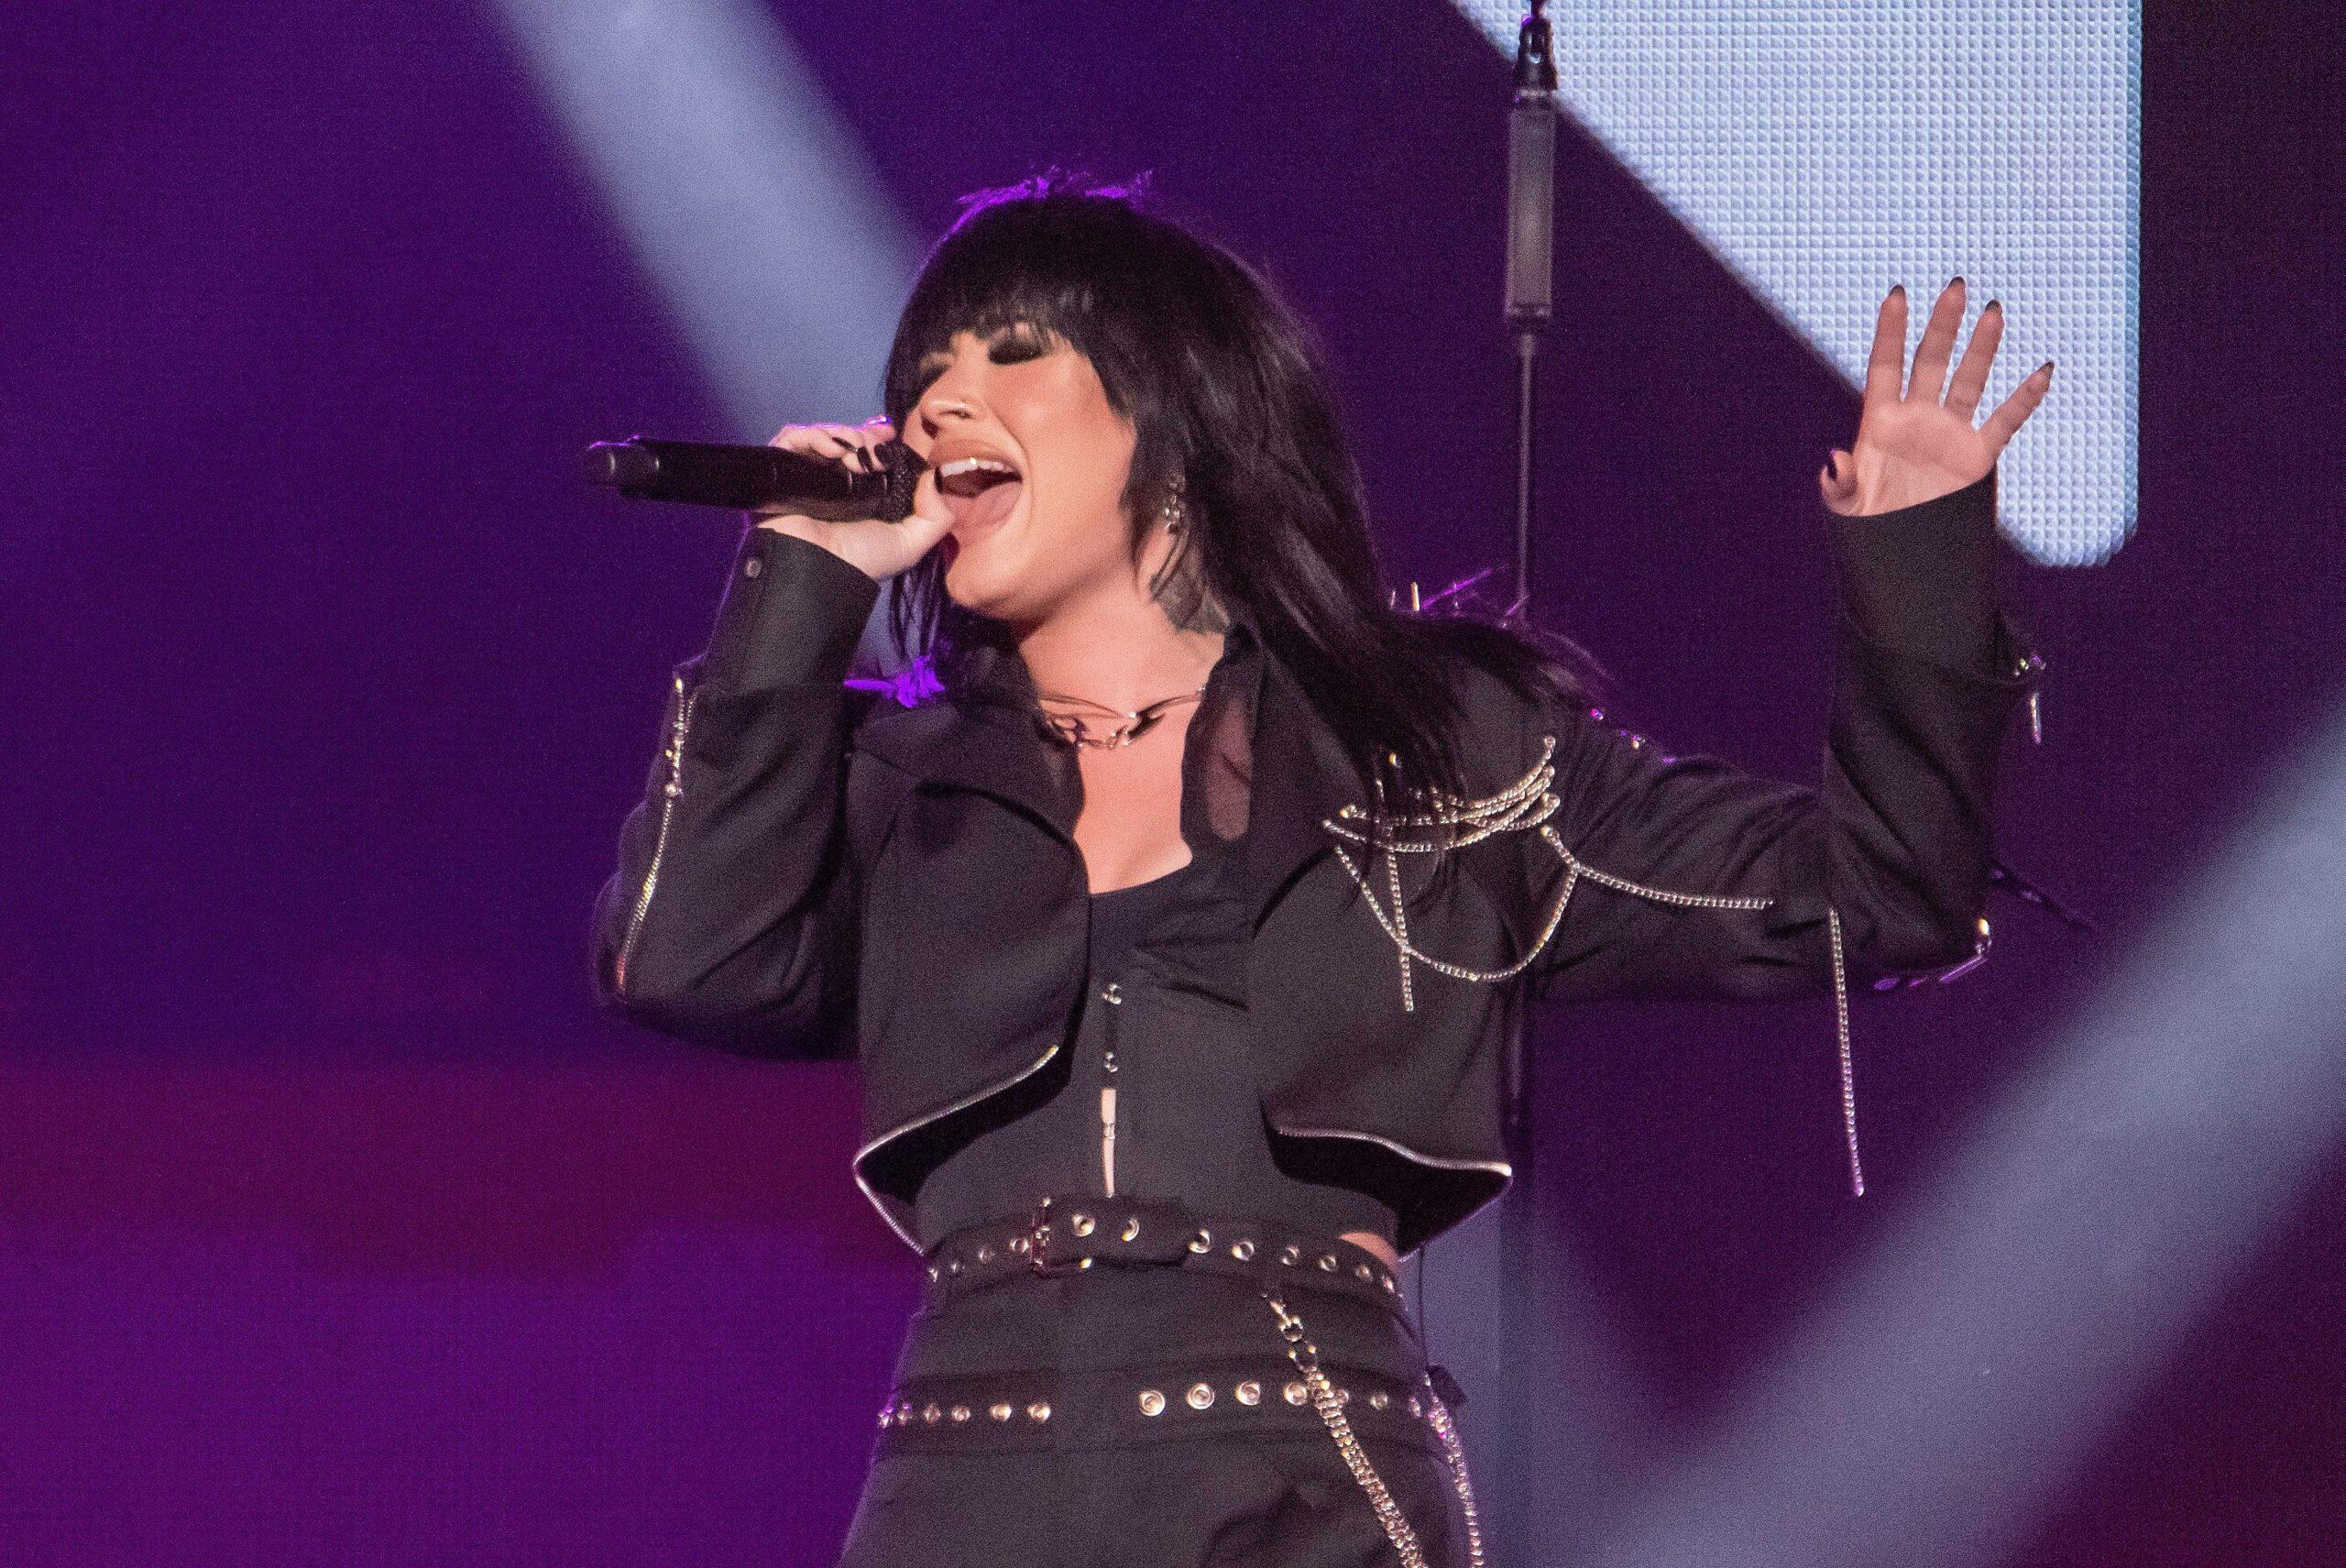 Demi Lovato at iHeartRadio z100's Jingle Ball 2022 Show